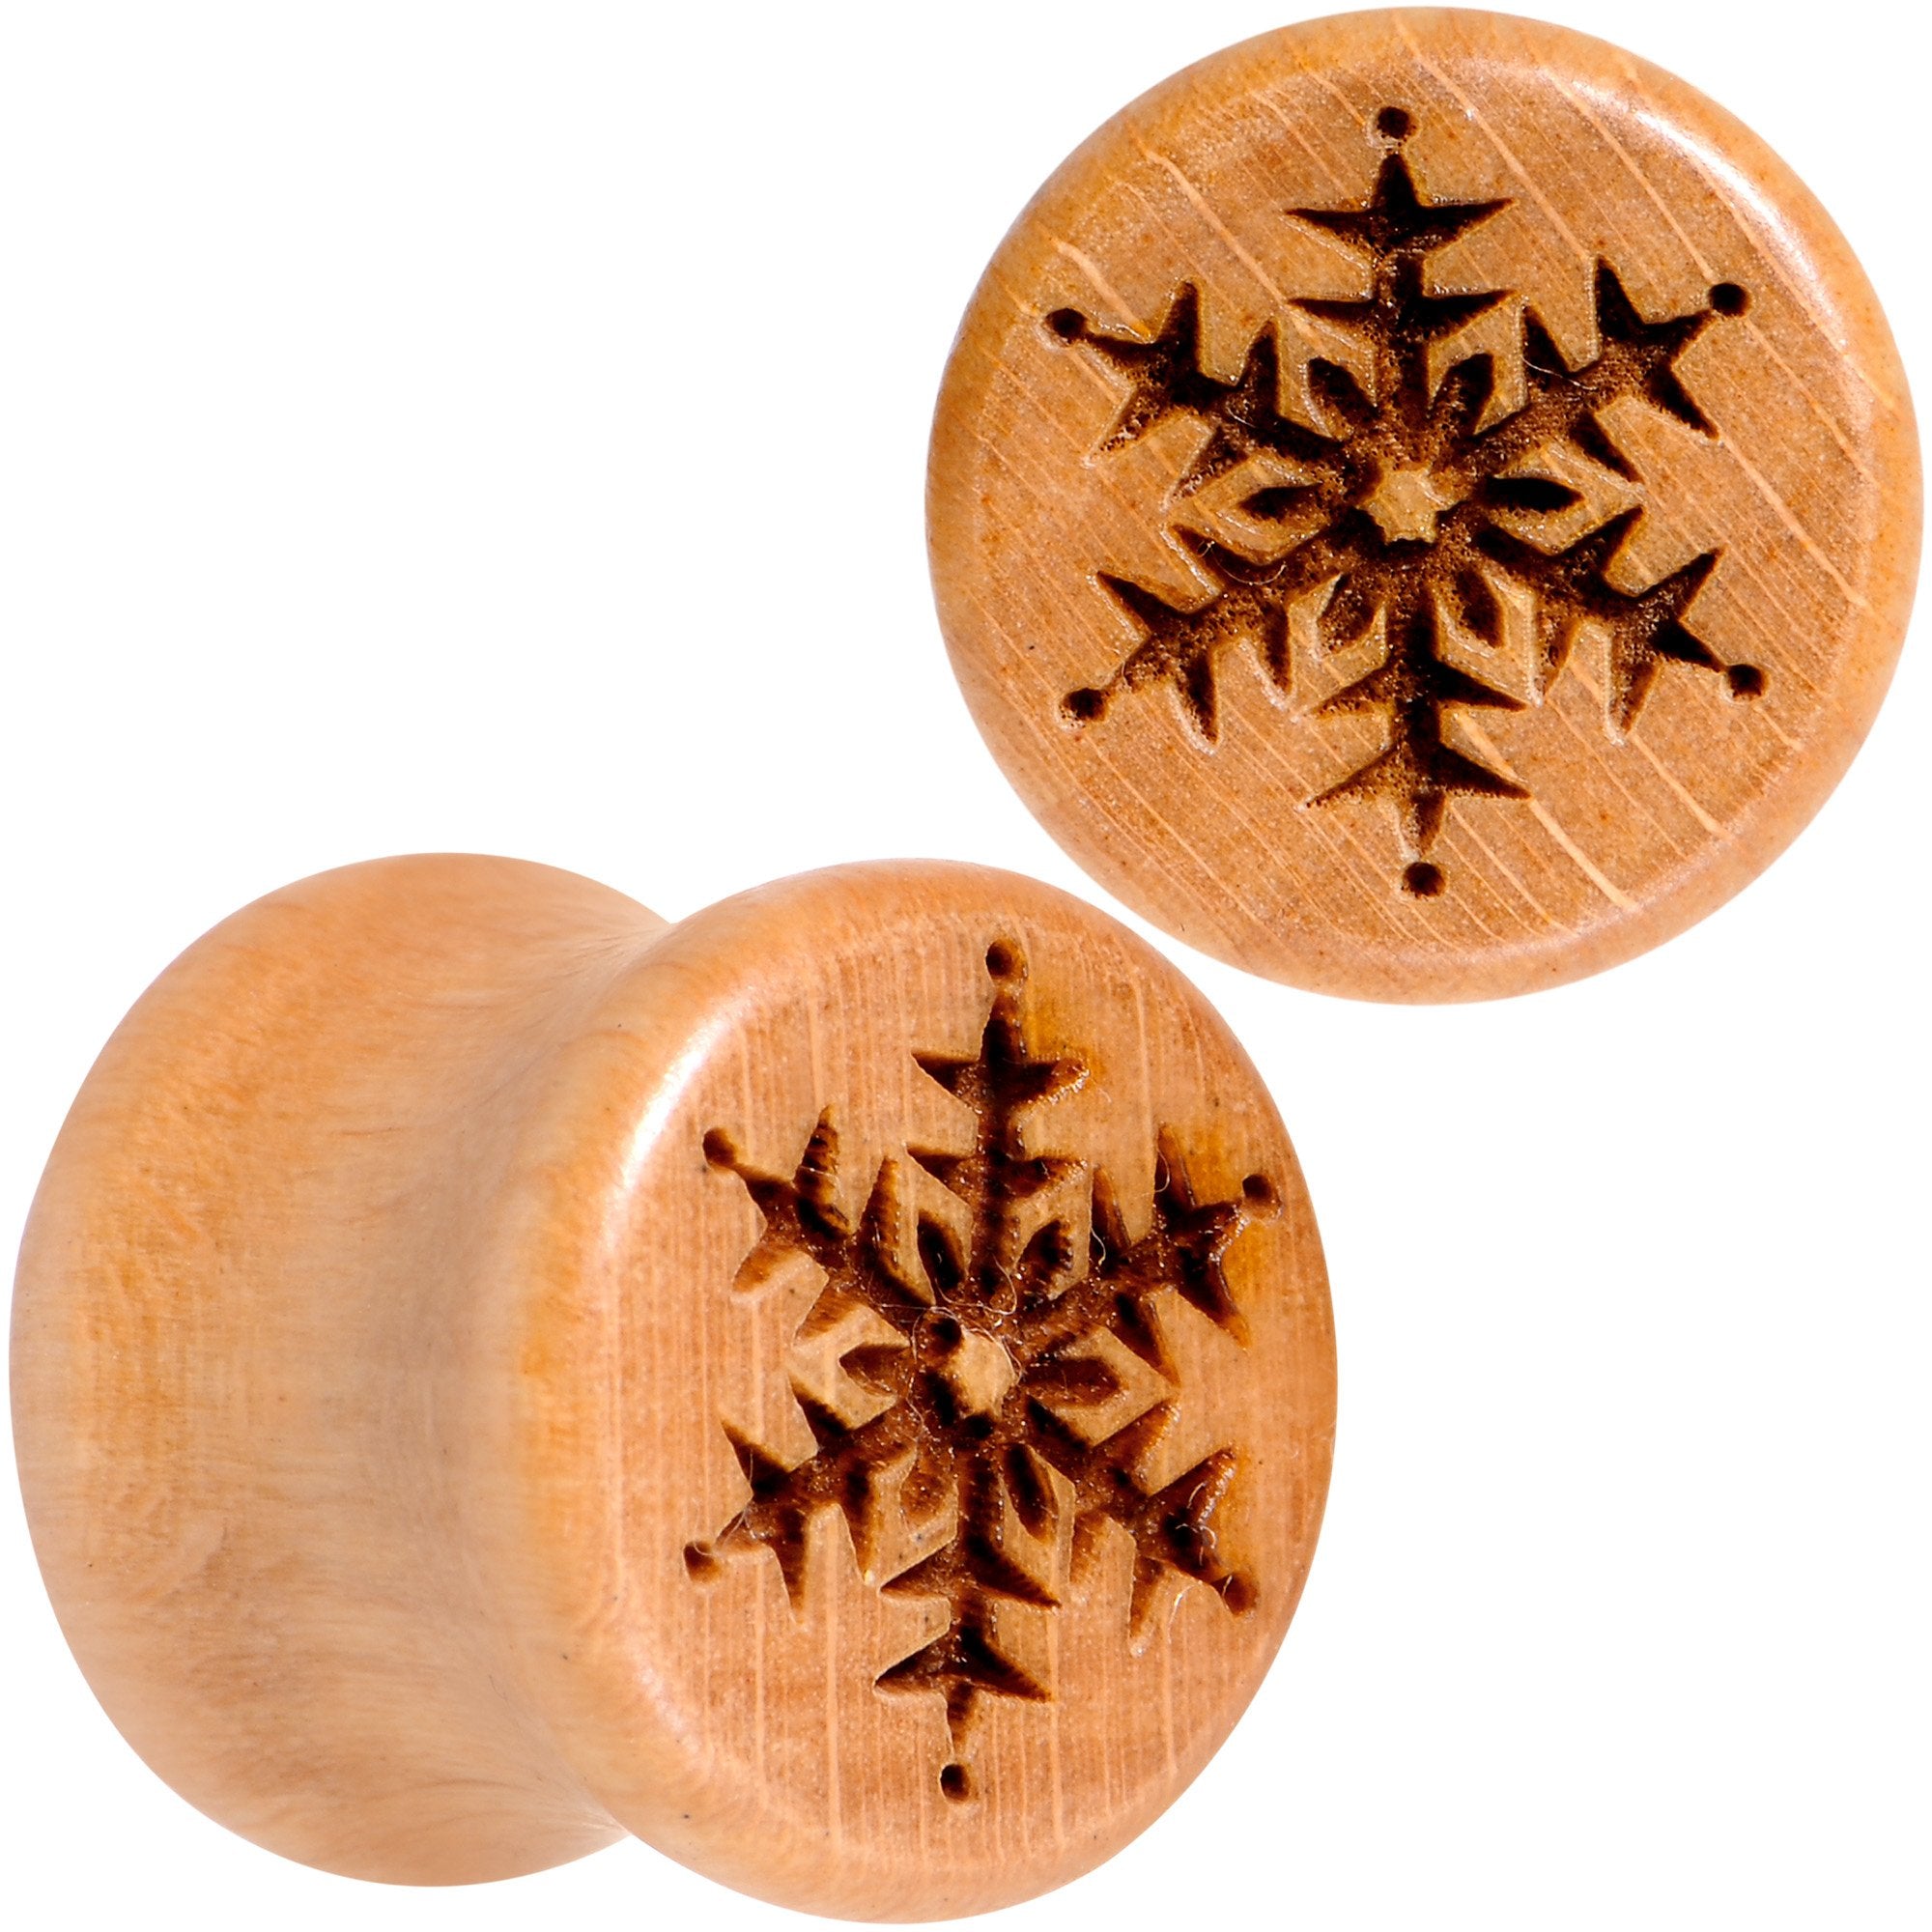 Organic Beechwood Holiday Winter Snowflake Saddle Plug Set Sizes 8mm to 25mm